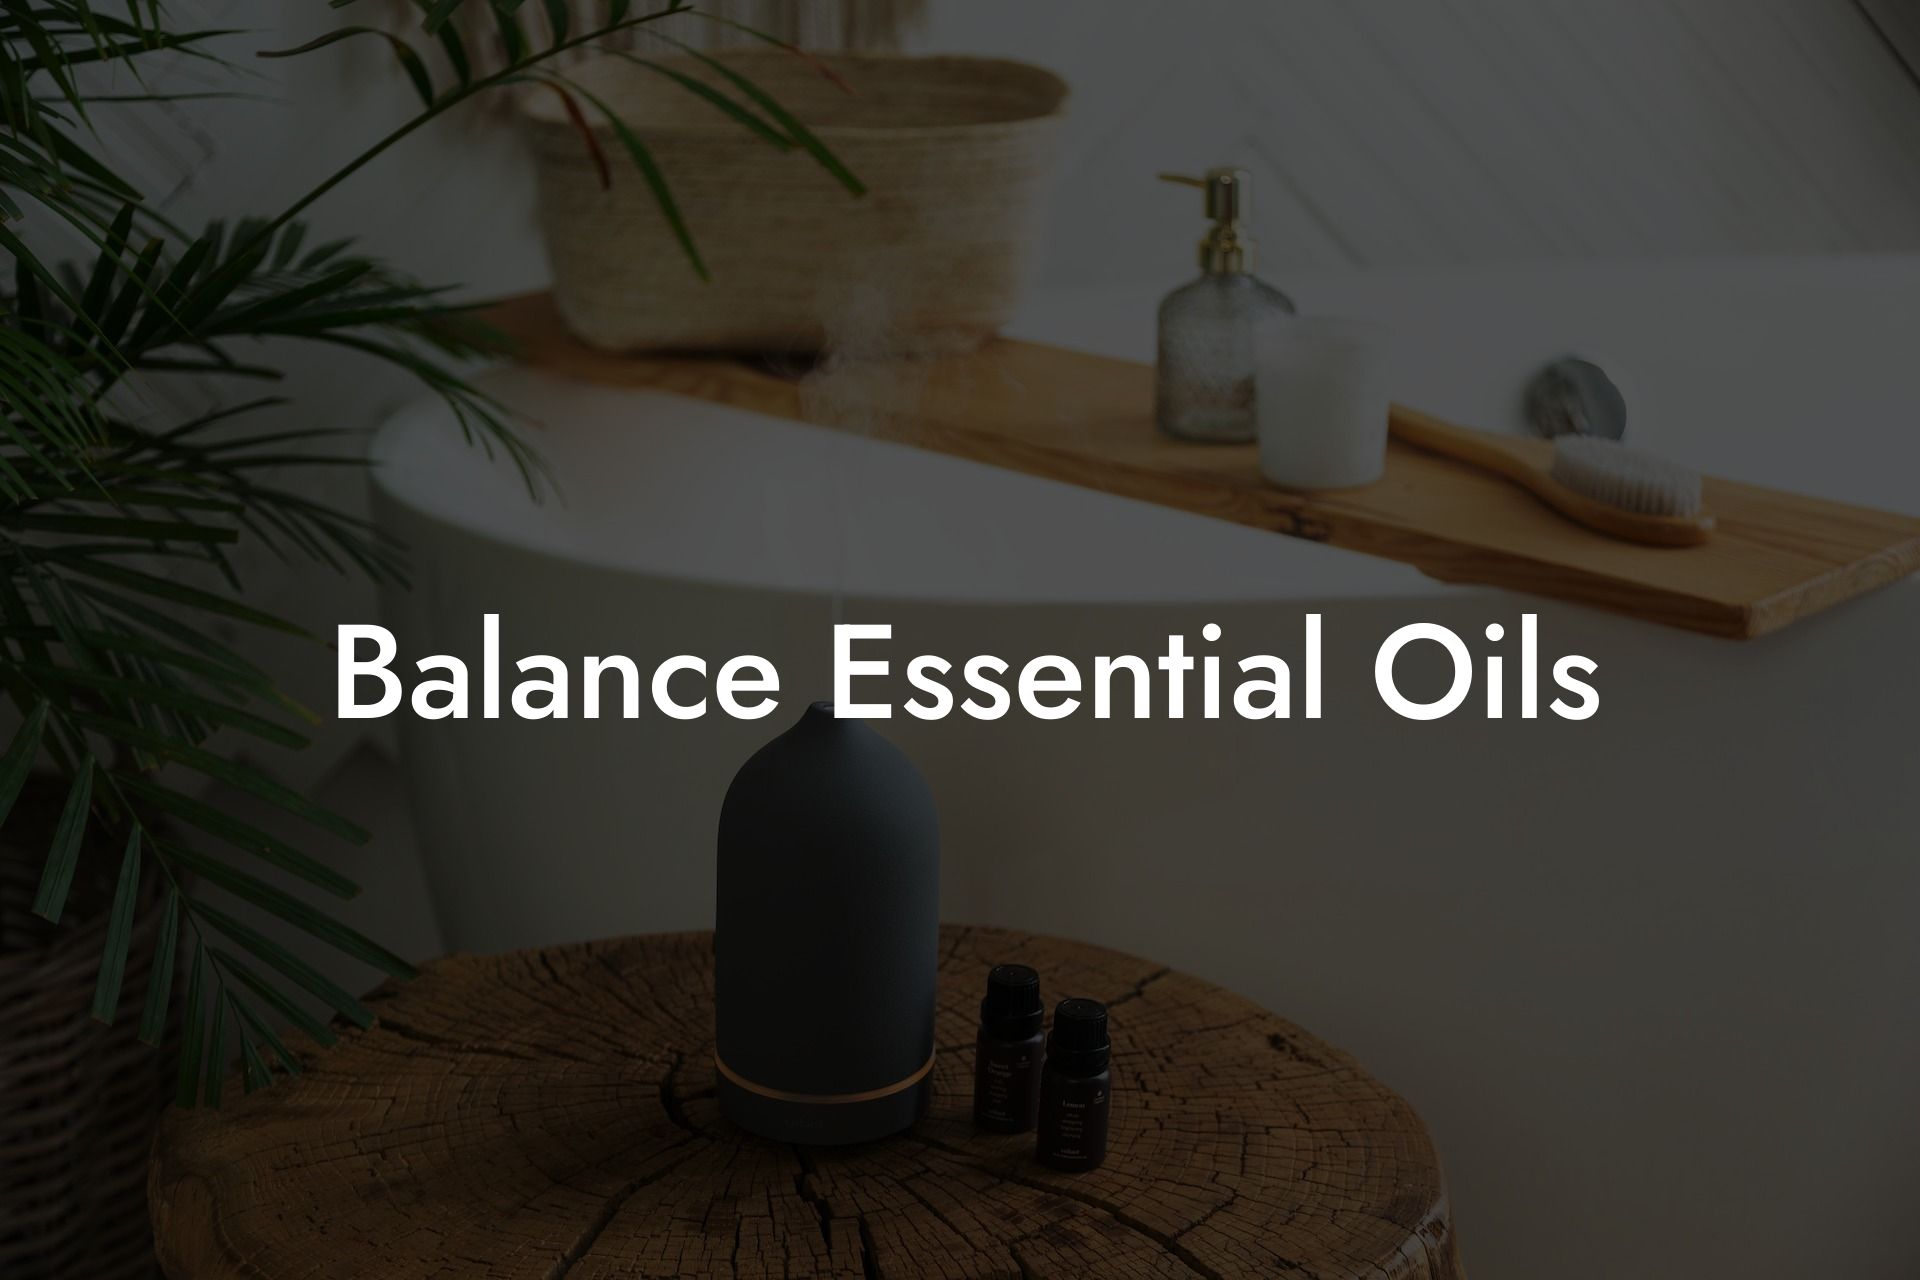 Balance Essential Oils